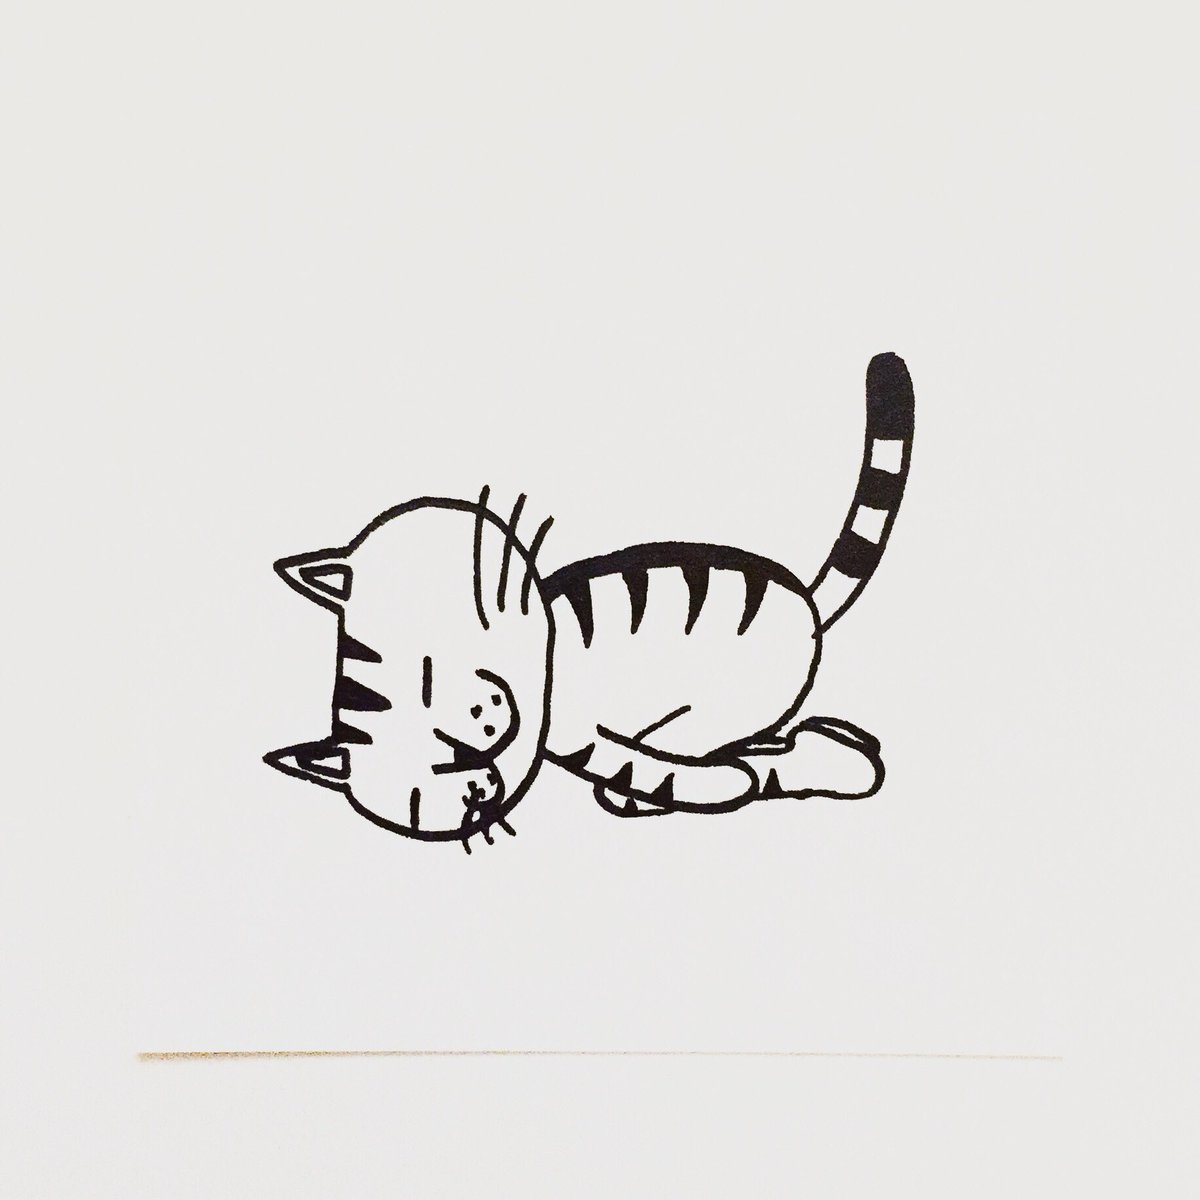 肌子 على تويتر 今日のイラストはコレ ｪ ヨガのチャイルドポーズをしている猫 イラスト 猫 ネコ ねこ オリジナル ペン画 アナログ画 絵 猫の絵 白黒猫 キジトラ猫